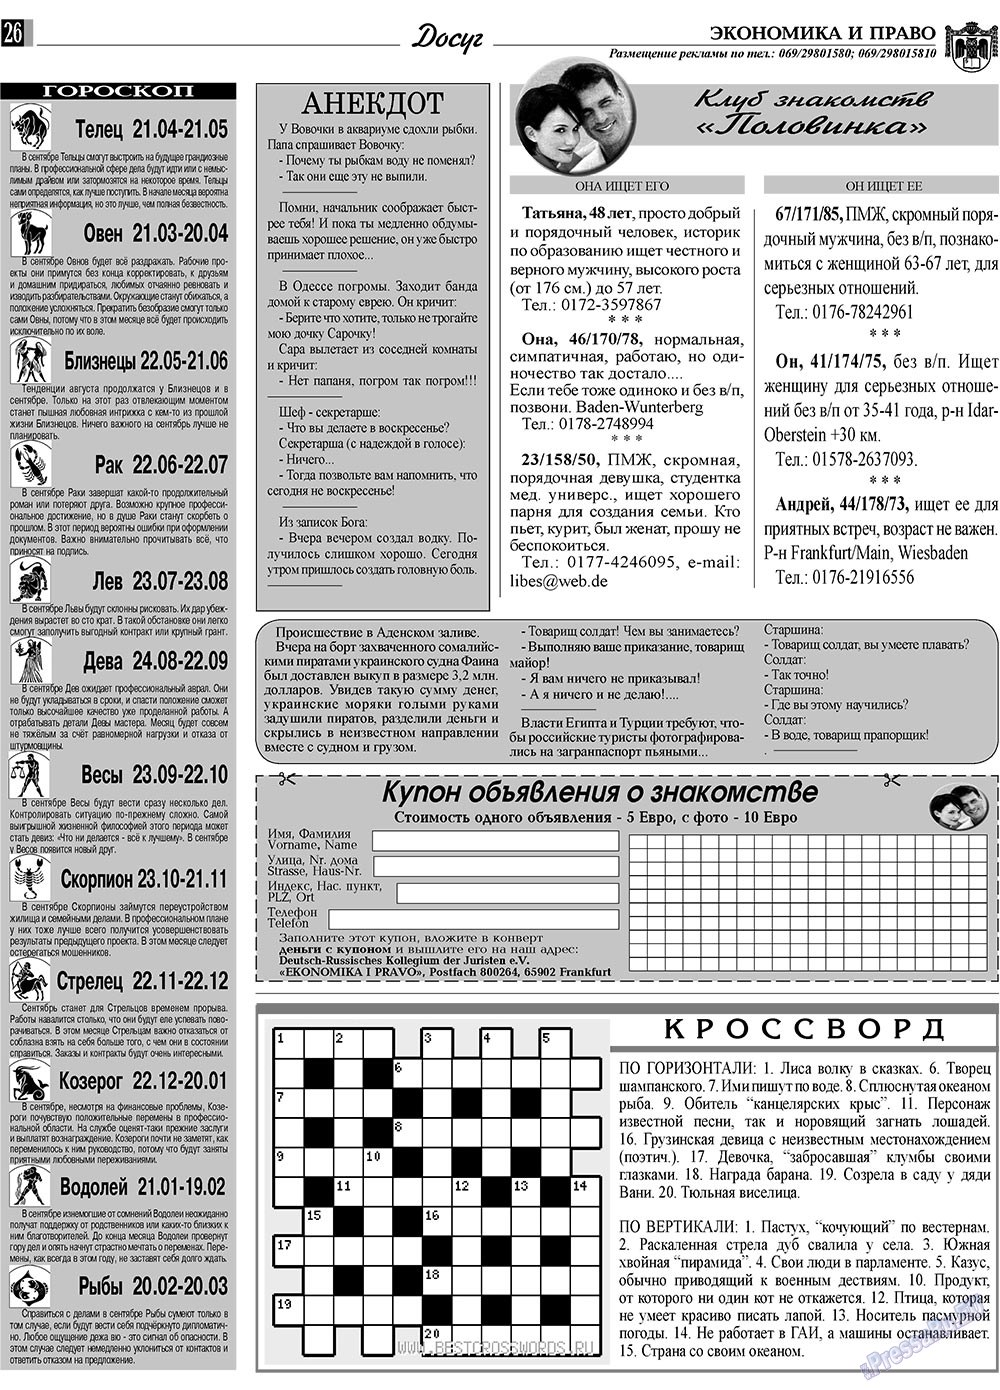 Экономика и право, газета. 2009 №9 стр.26